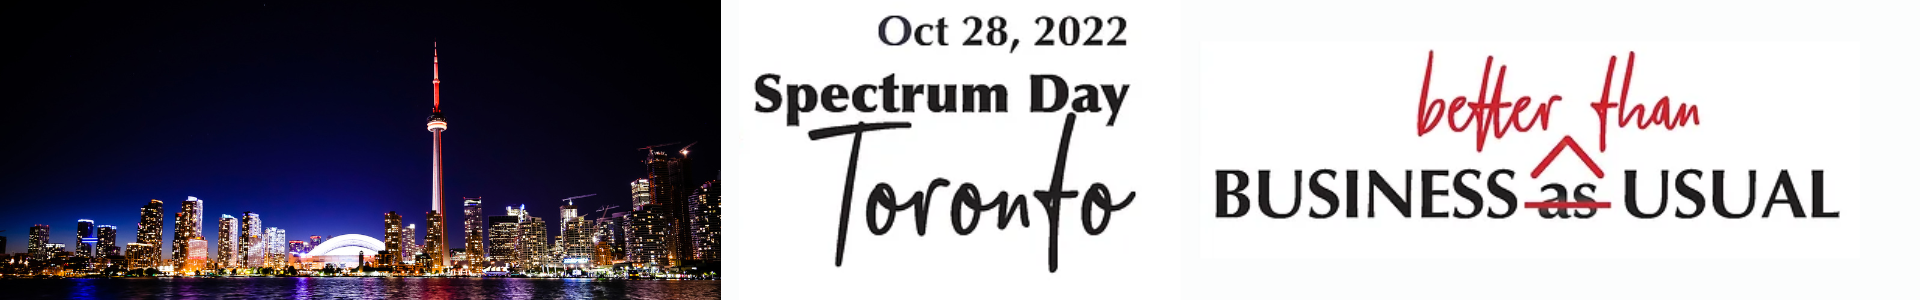 Spectrum Day Toronto 2022